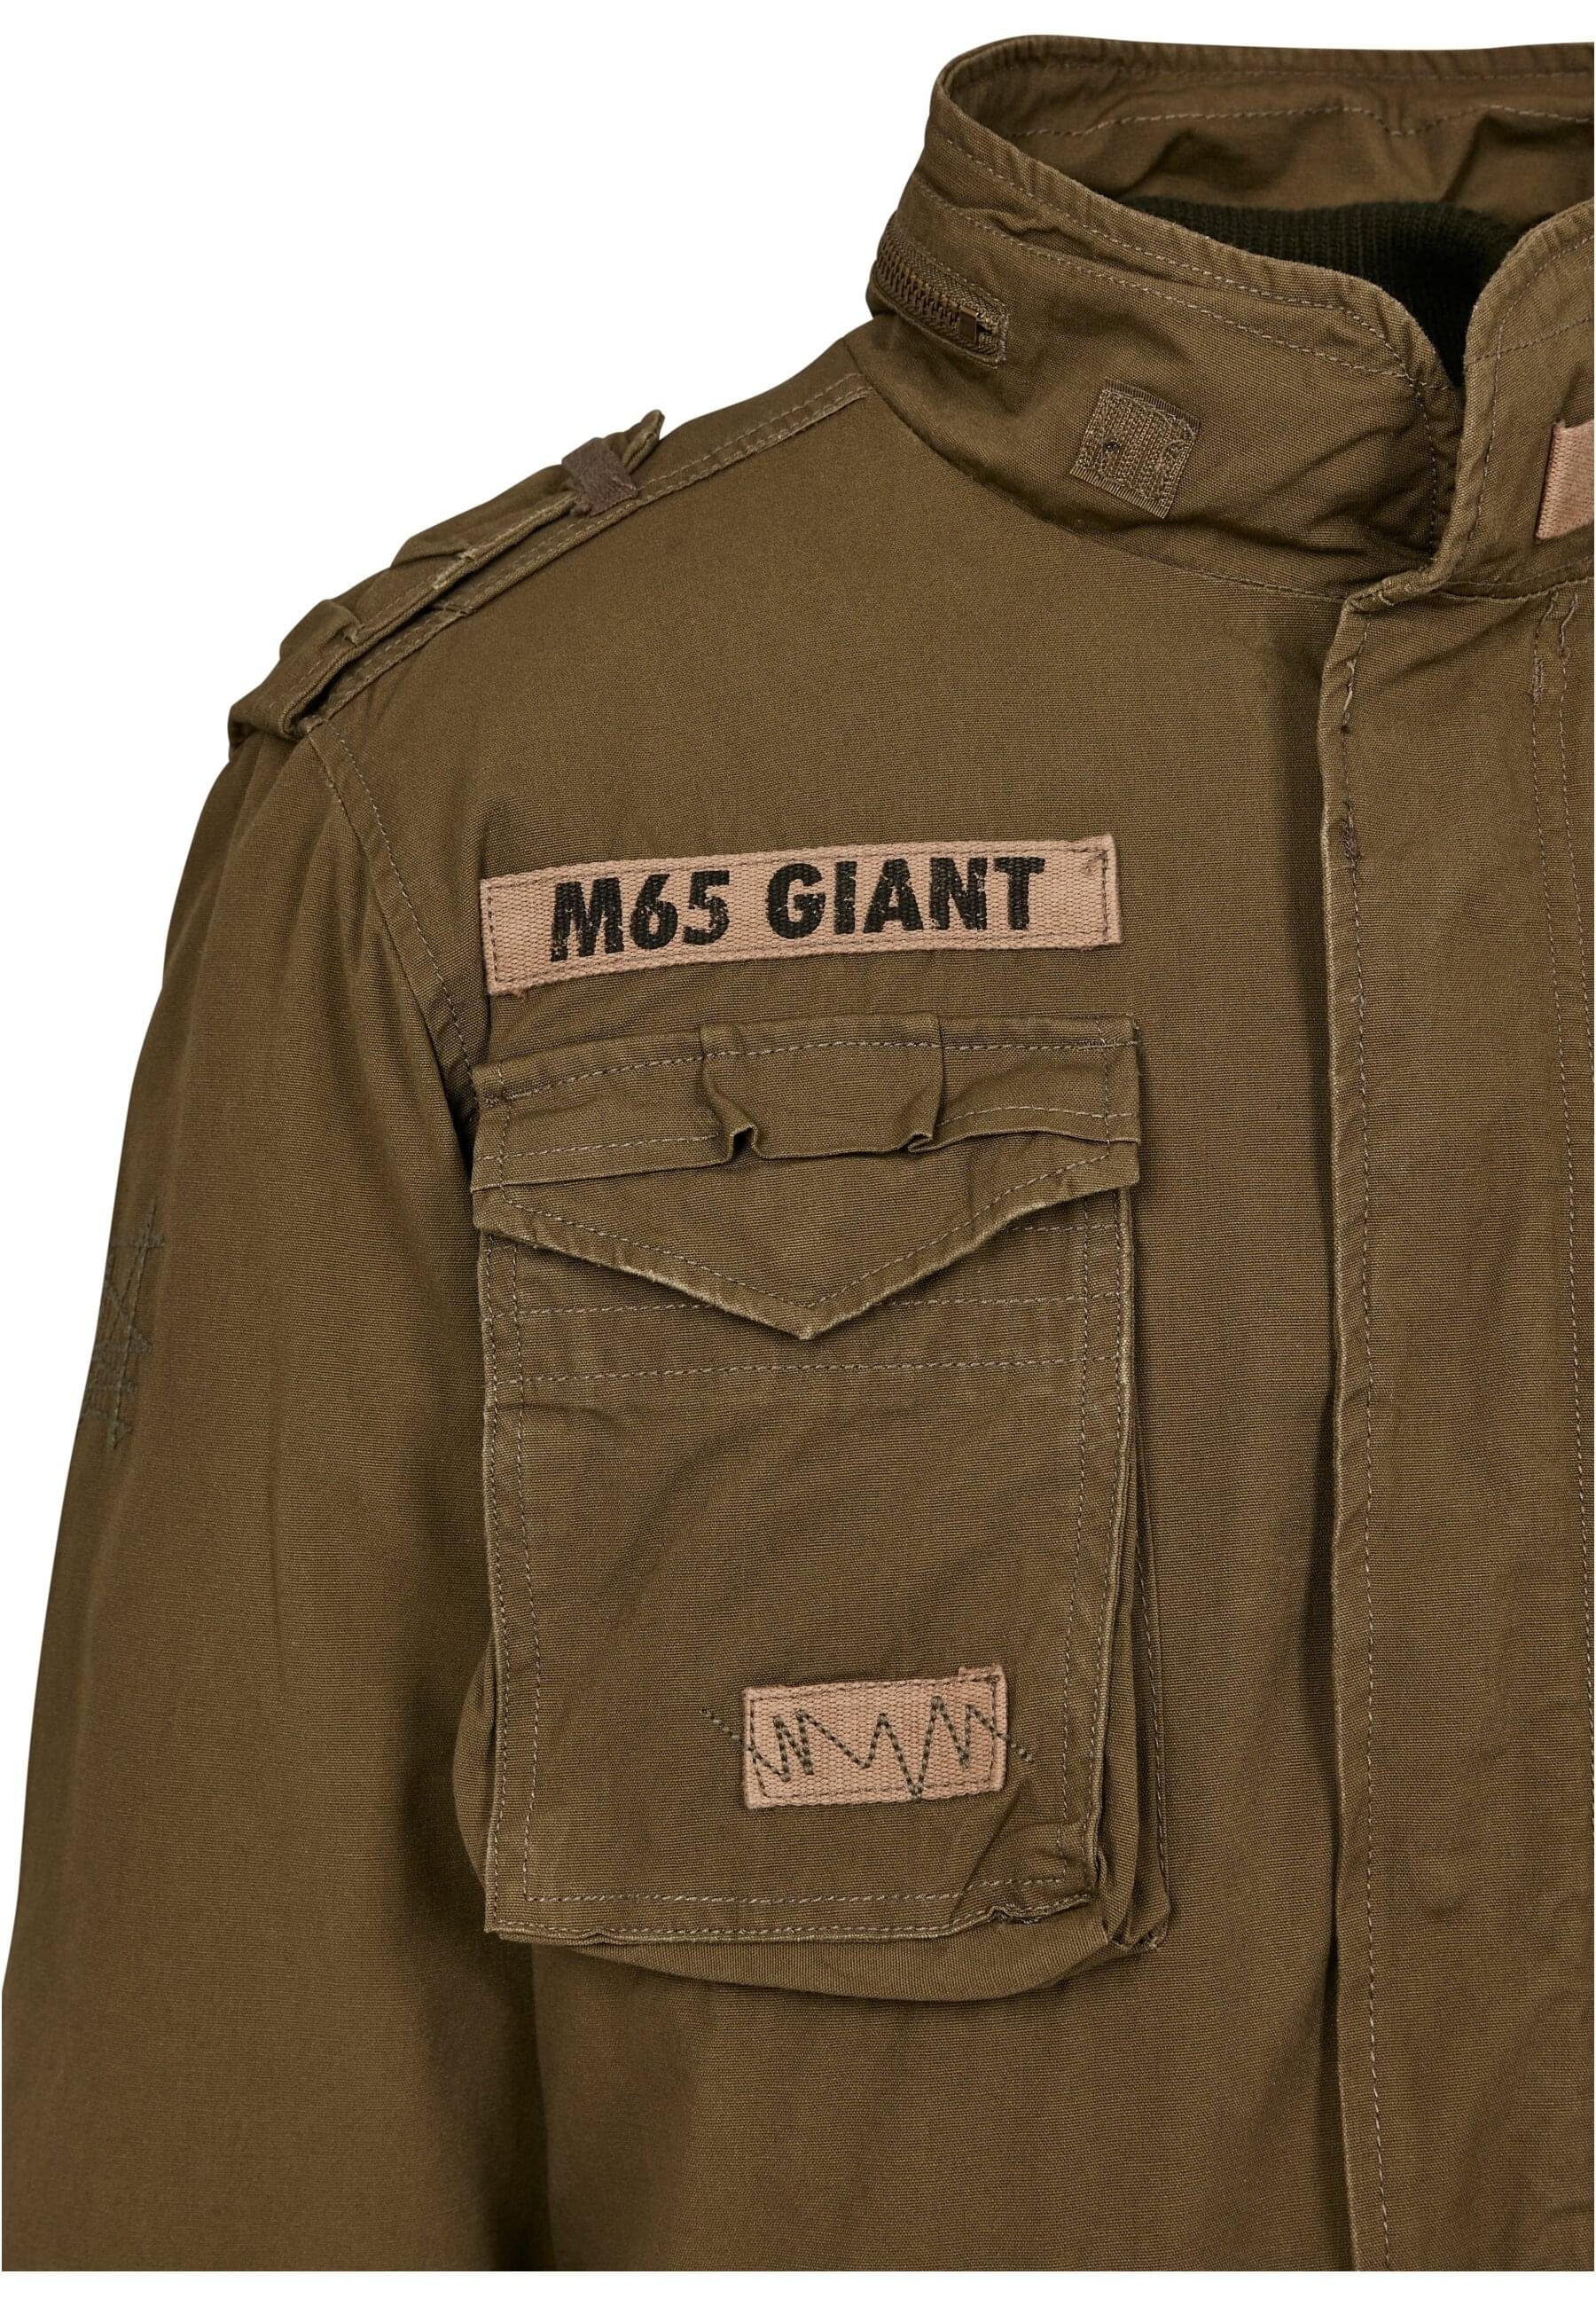 Giant Wintermantel olive Brandit M-65 Jacket Herren